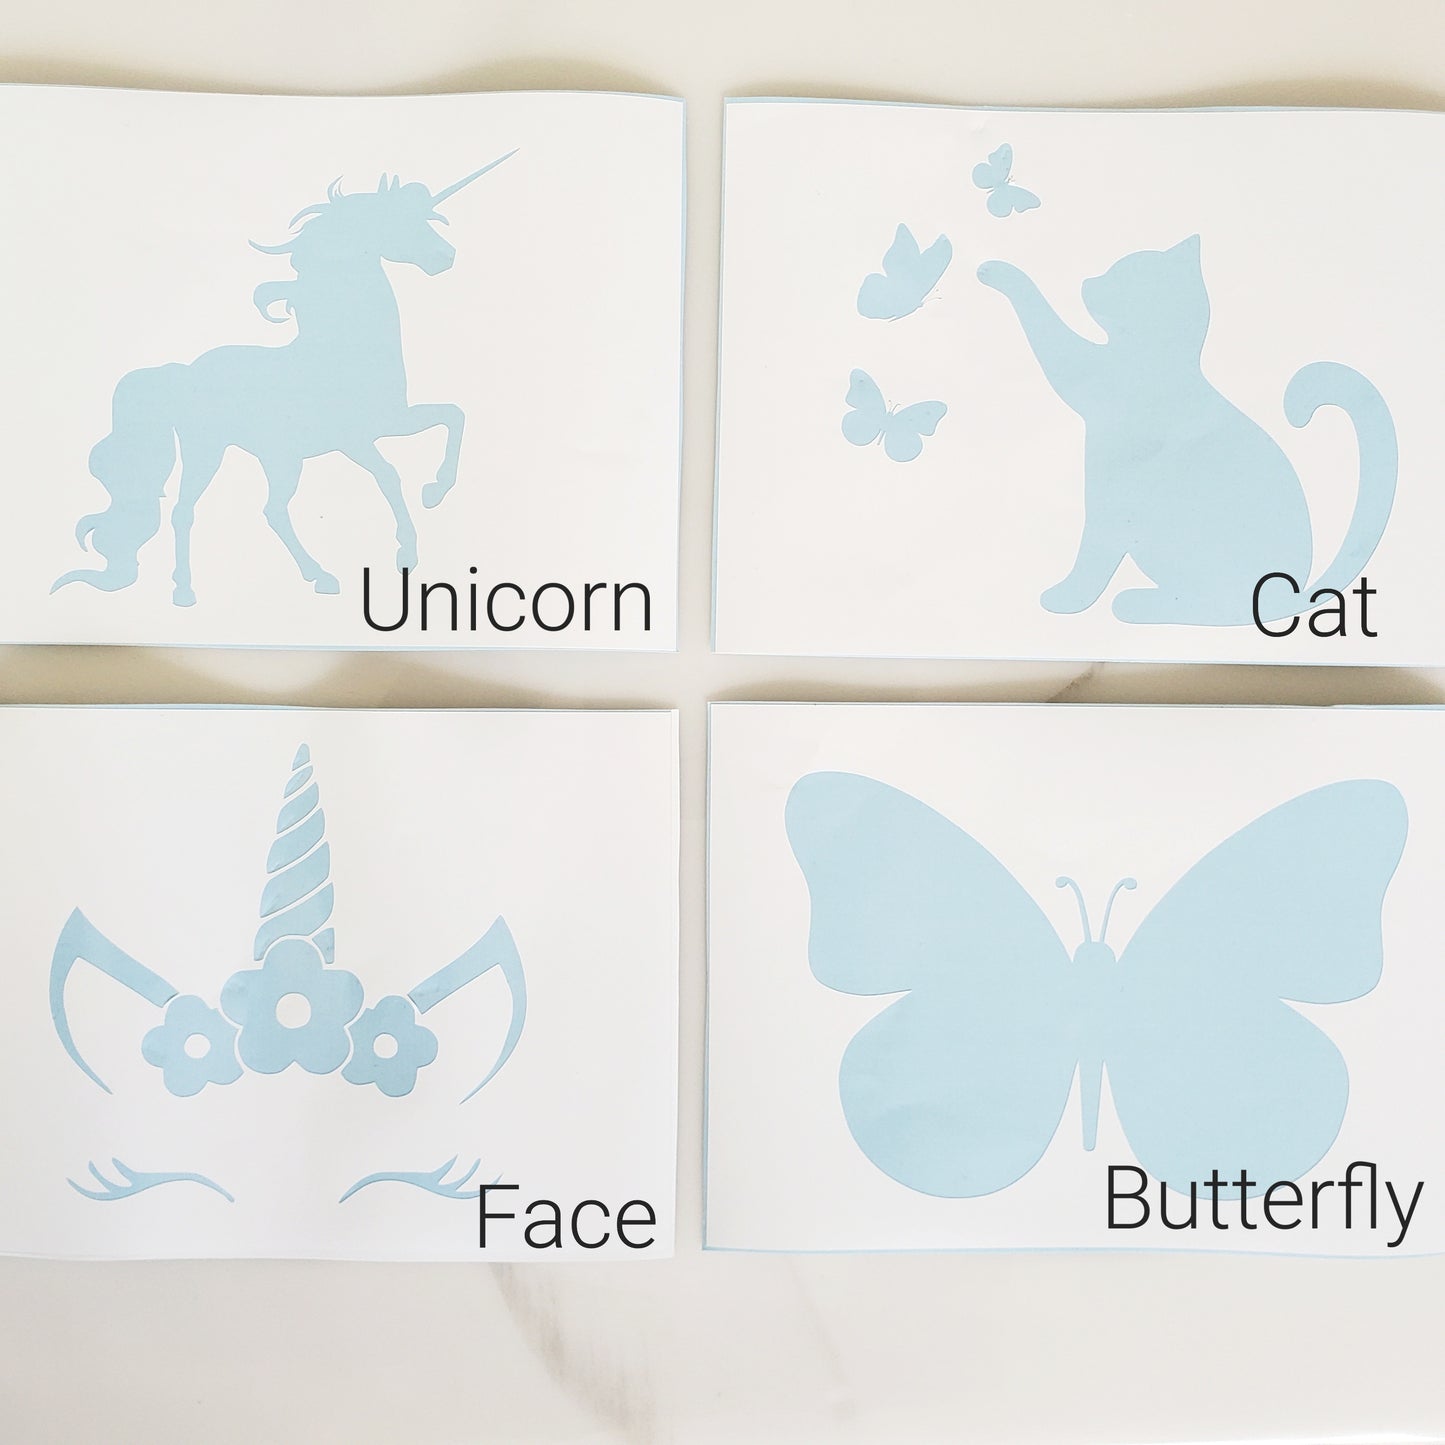 Unicorn Box | 3 Projects In 1 Box